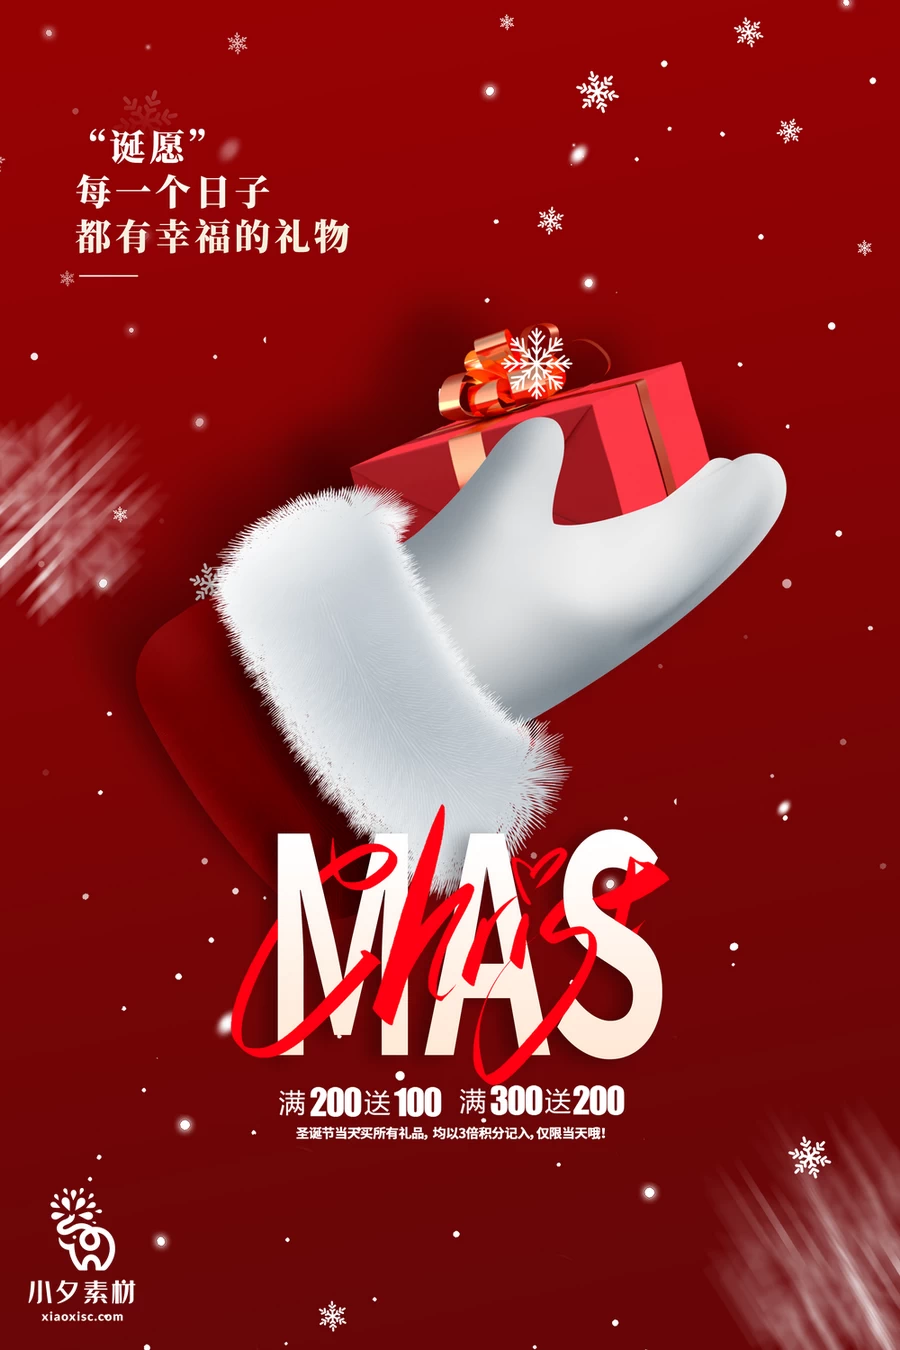 圣诞节节日节庆海报模板PSD分层设计素材【007】